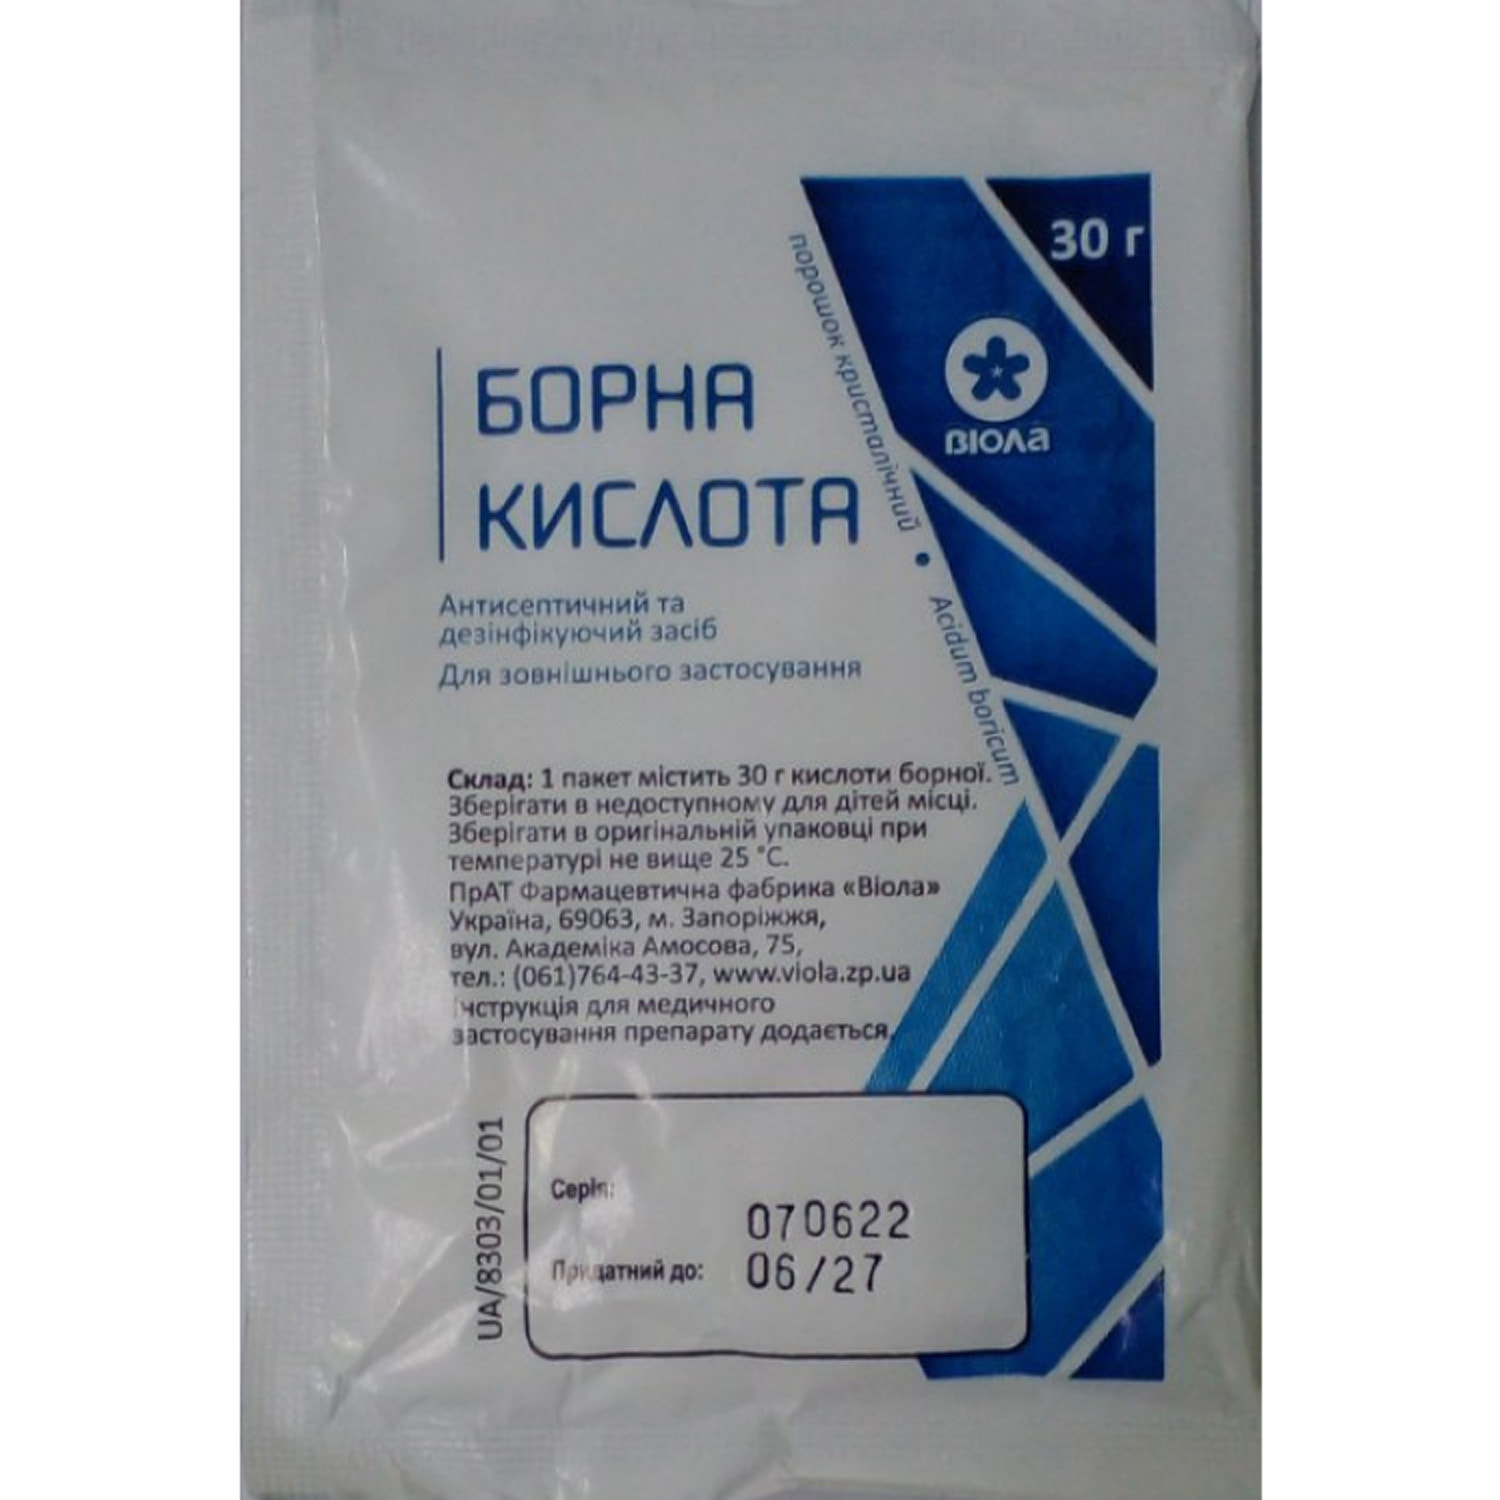 Борнаякислотапорошоккристалличическийпакет30г(5550002932991)Виола(Украина)-инструкция,купитьпонизкойценевУкраине|Аналоги,отзывы-МИСАптека9-1-1